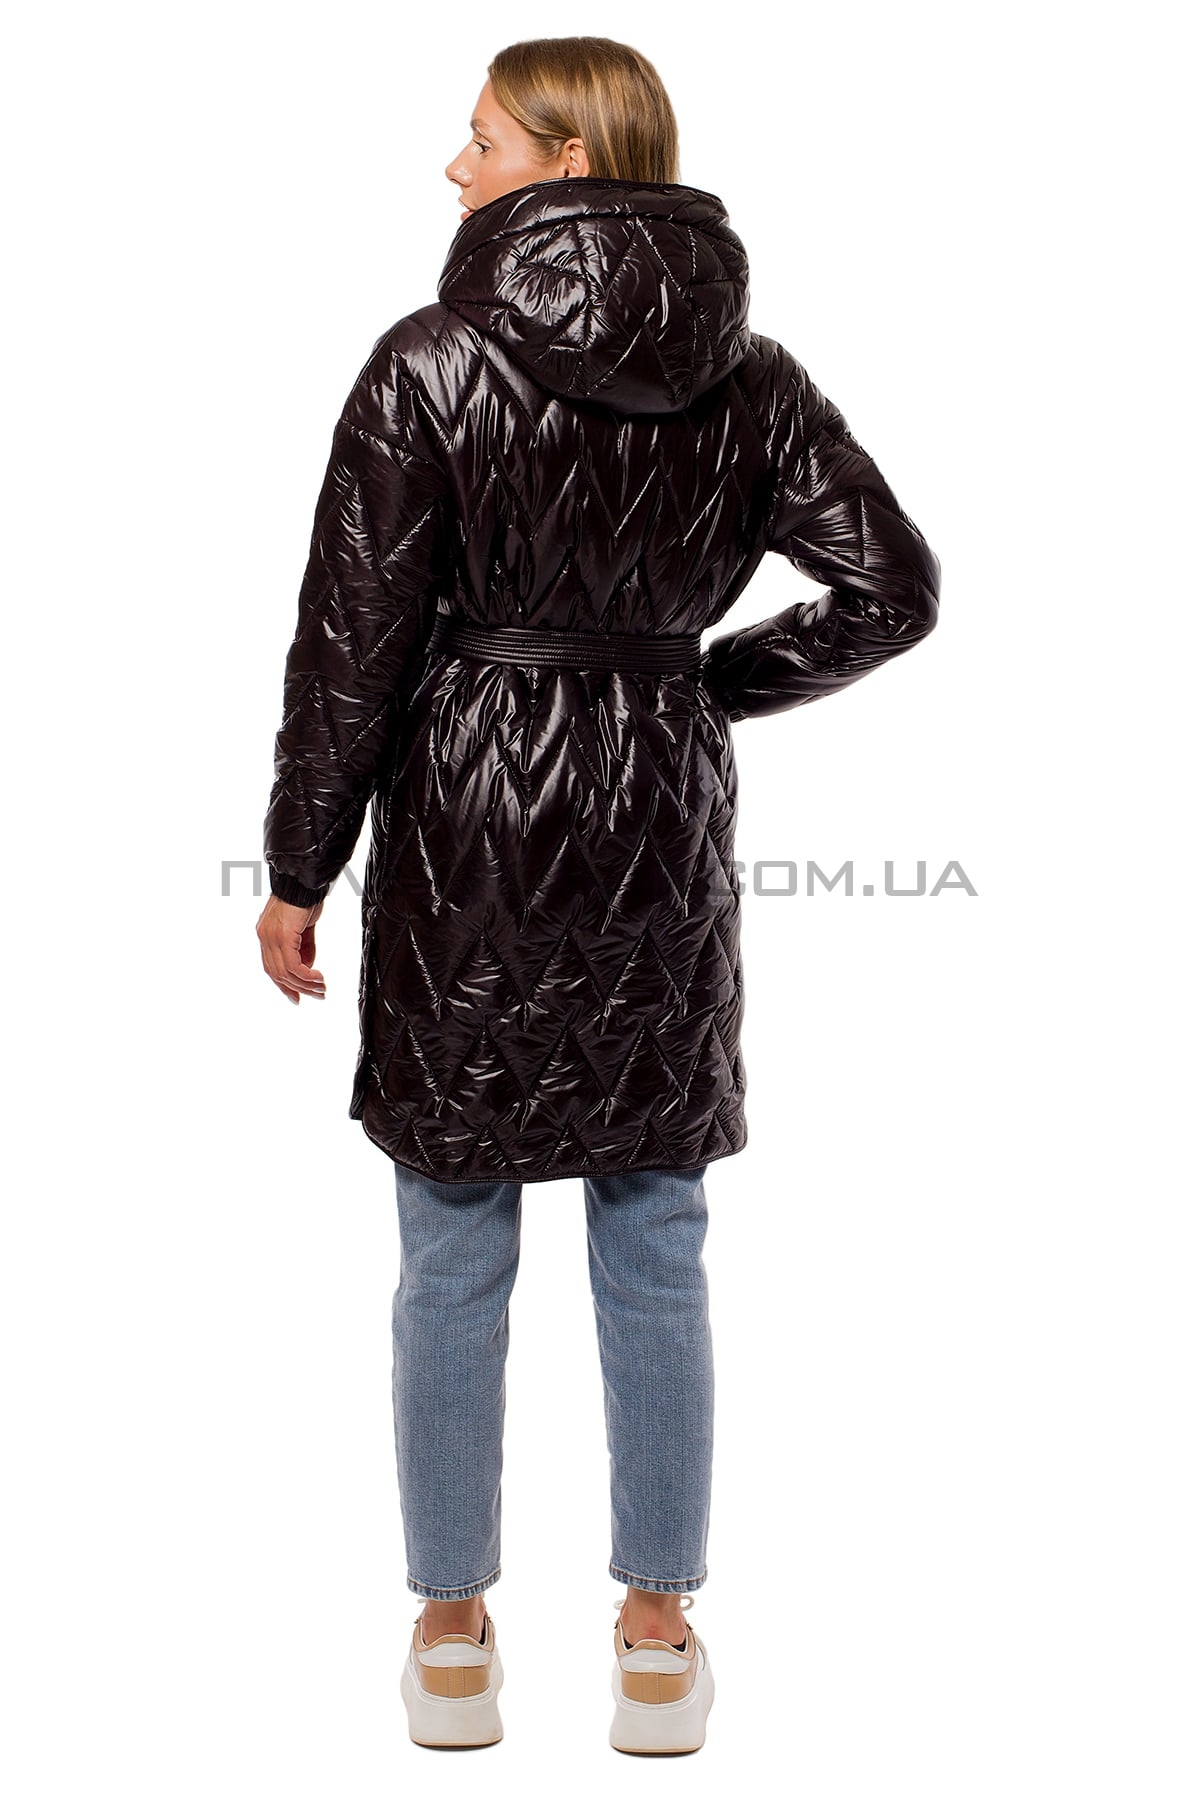  Жіноча куртка чорна утеплювач Tinsul-M